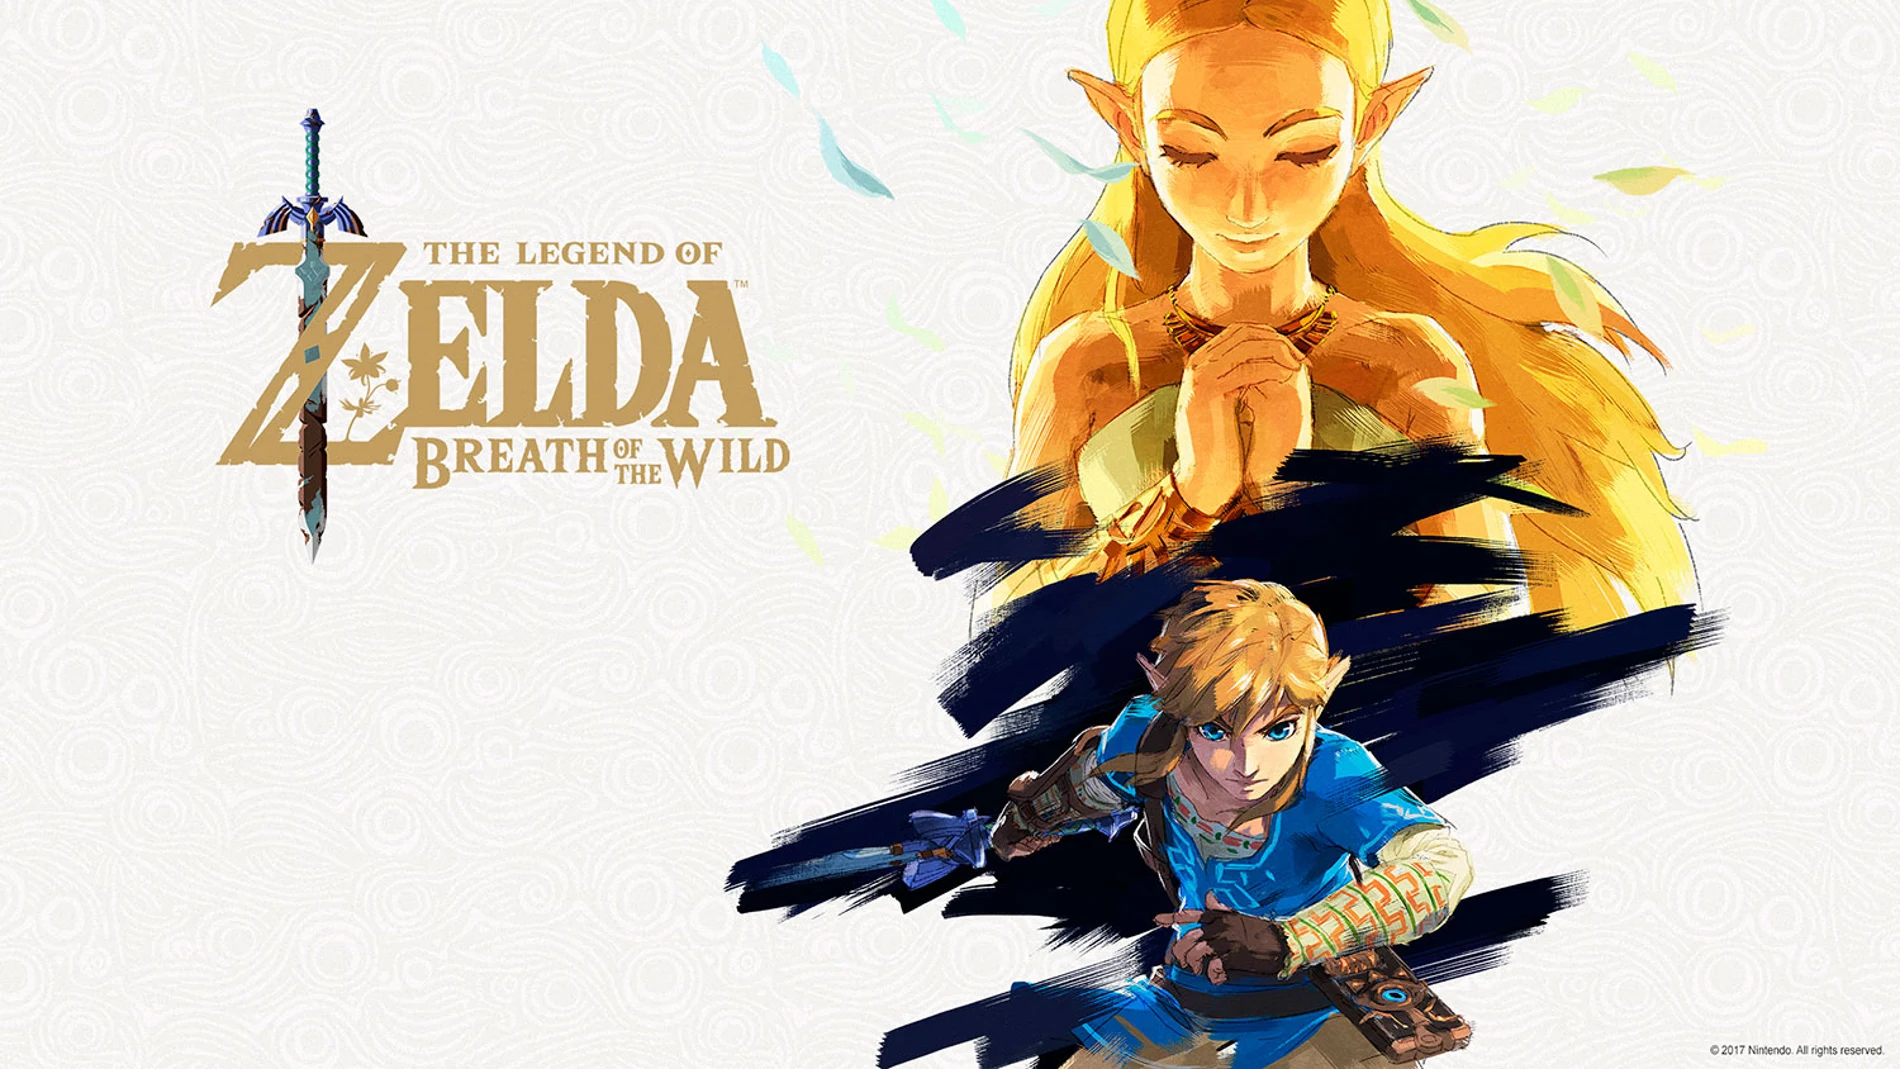 Imagen original de The Legend of Zelda: Breath of the Wild